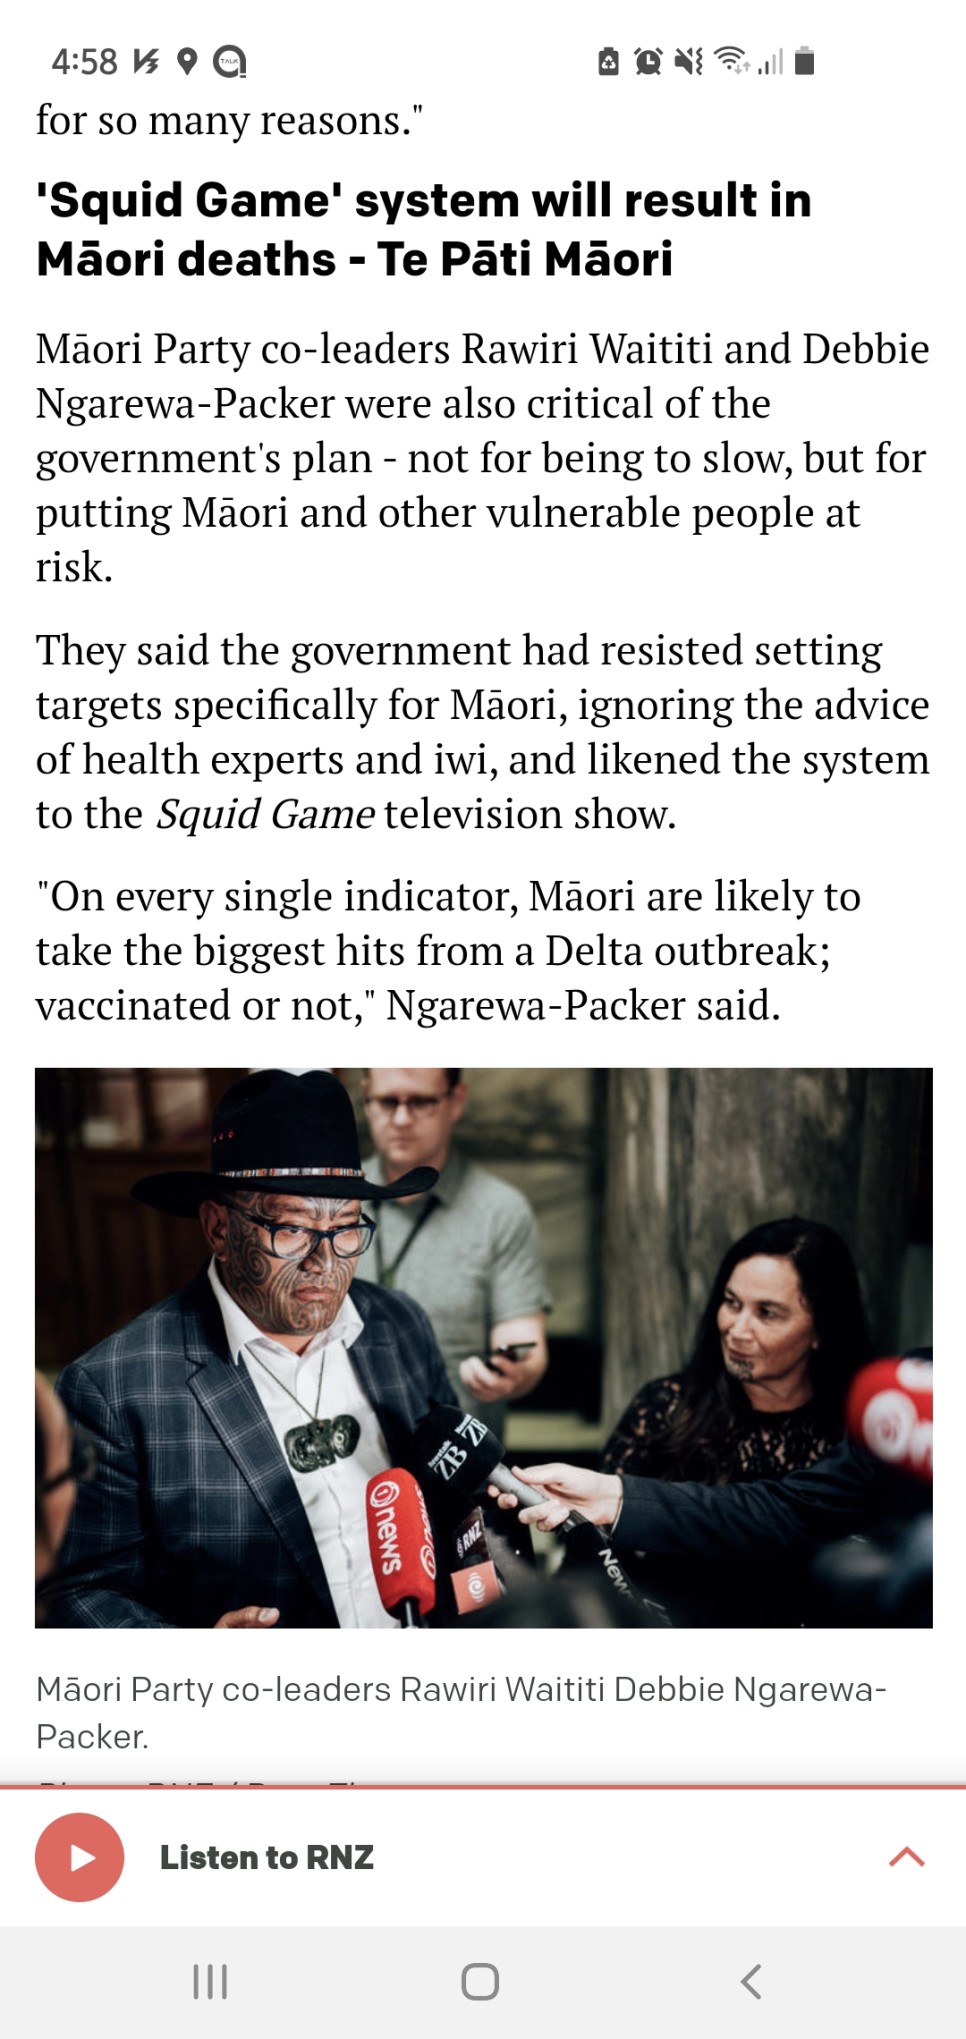 뉴질랜드 방역 모범국에서 은둔형 왕국되다, 백신접종율 90% 안되면 봉쇄 안풀어